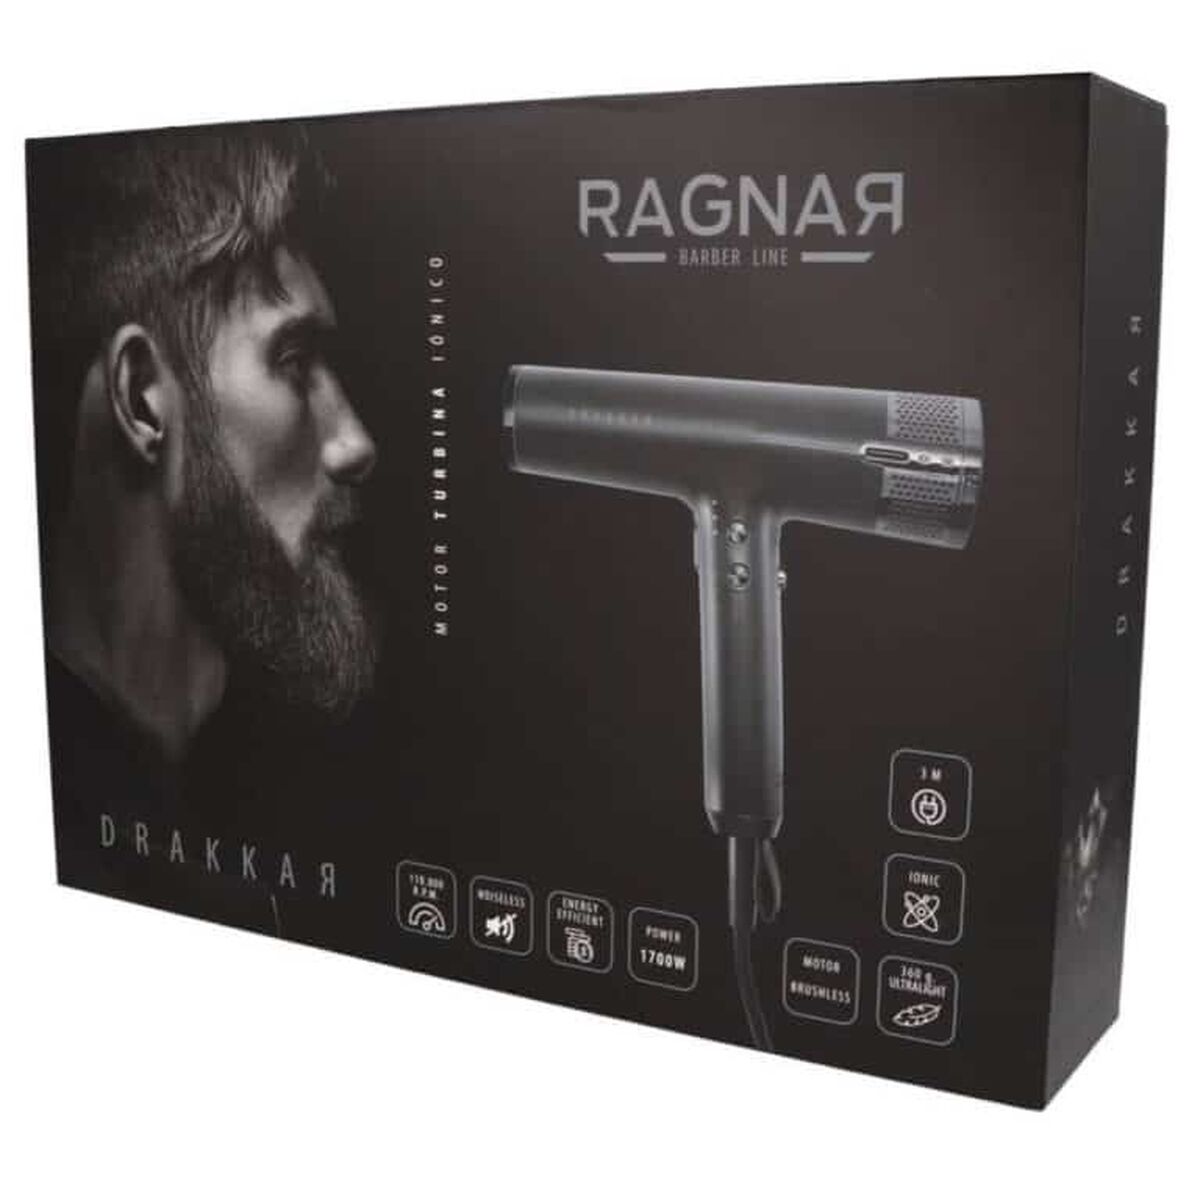 Hairdryer Eurostil Drakkar by Ragnar